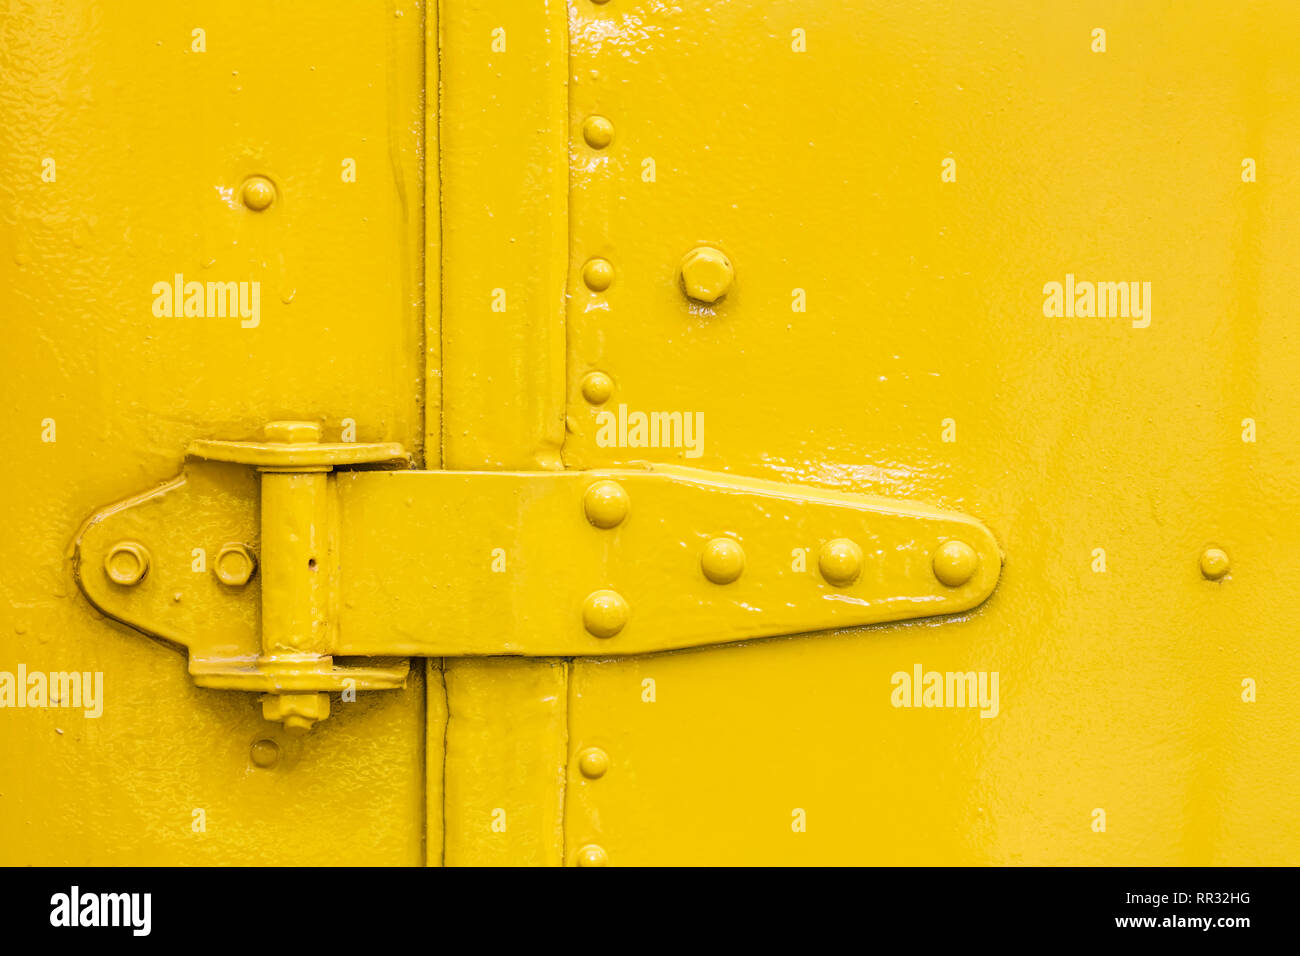 Tür Scharnier Detailansicht auf Gelb lackiert Abstract grunge Hintergrund Stockfoto